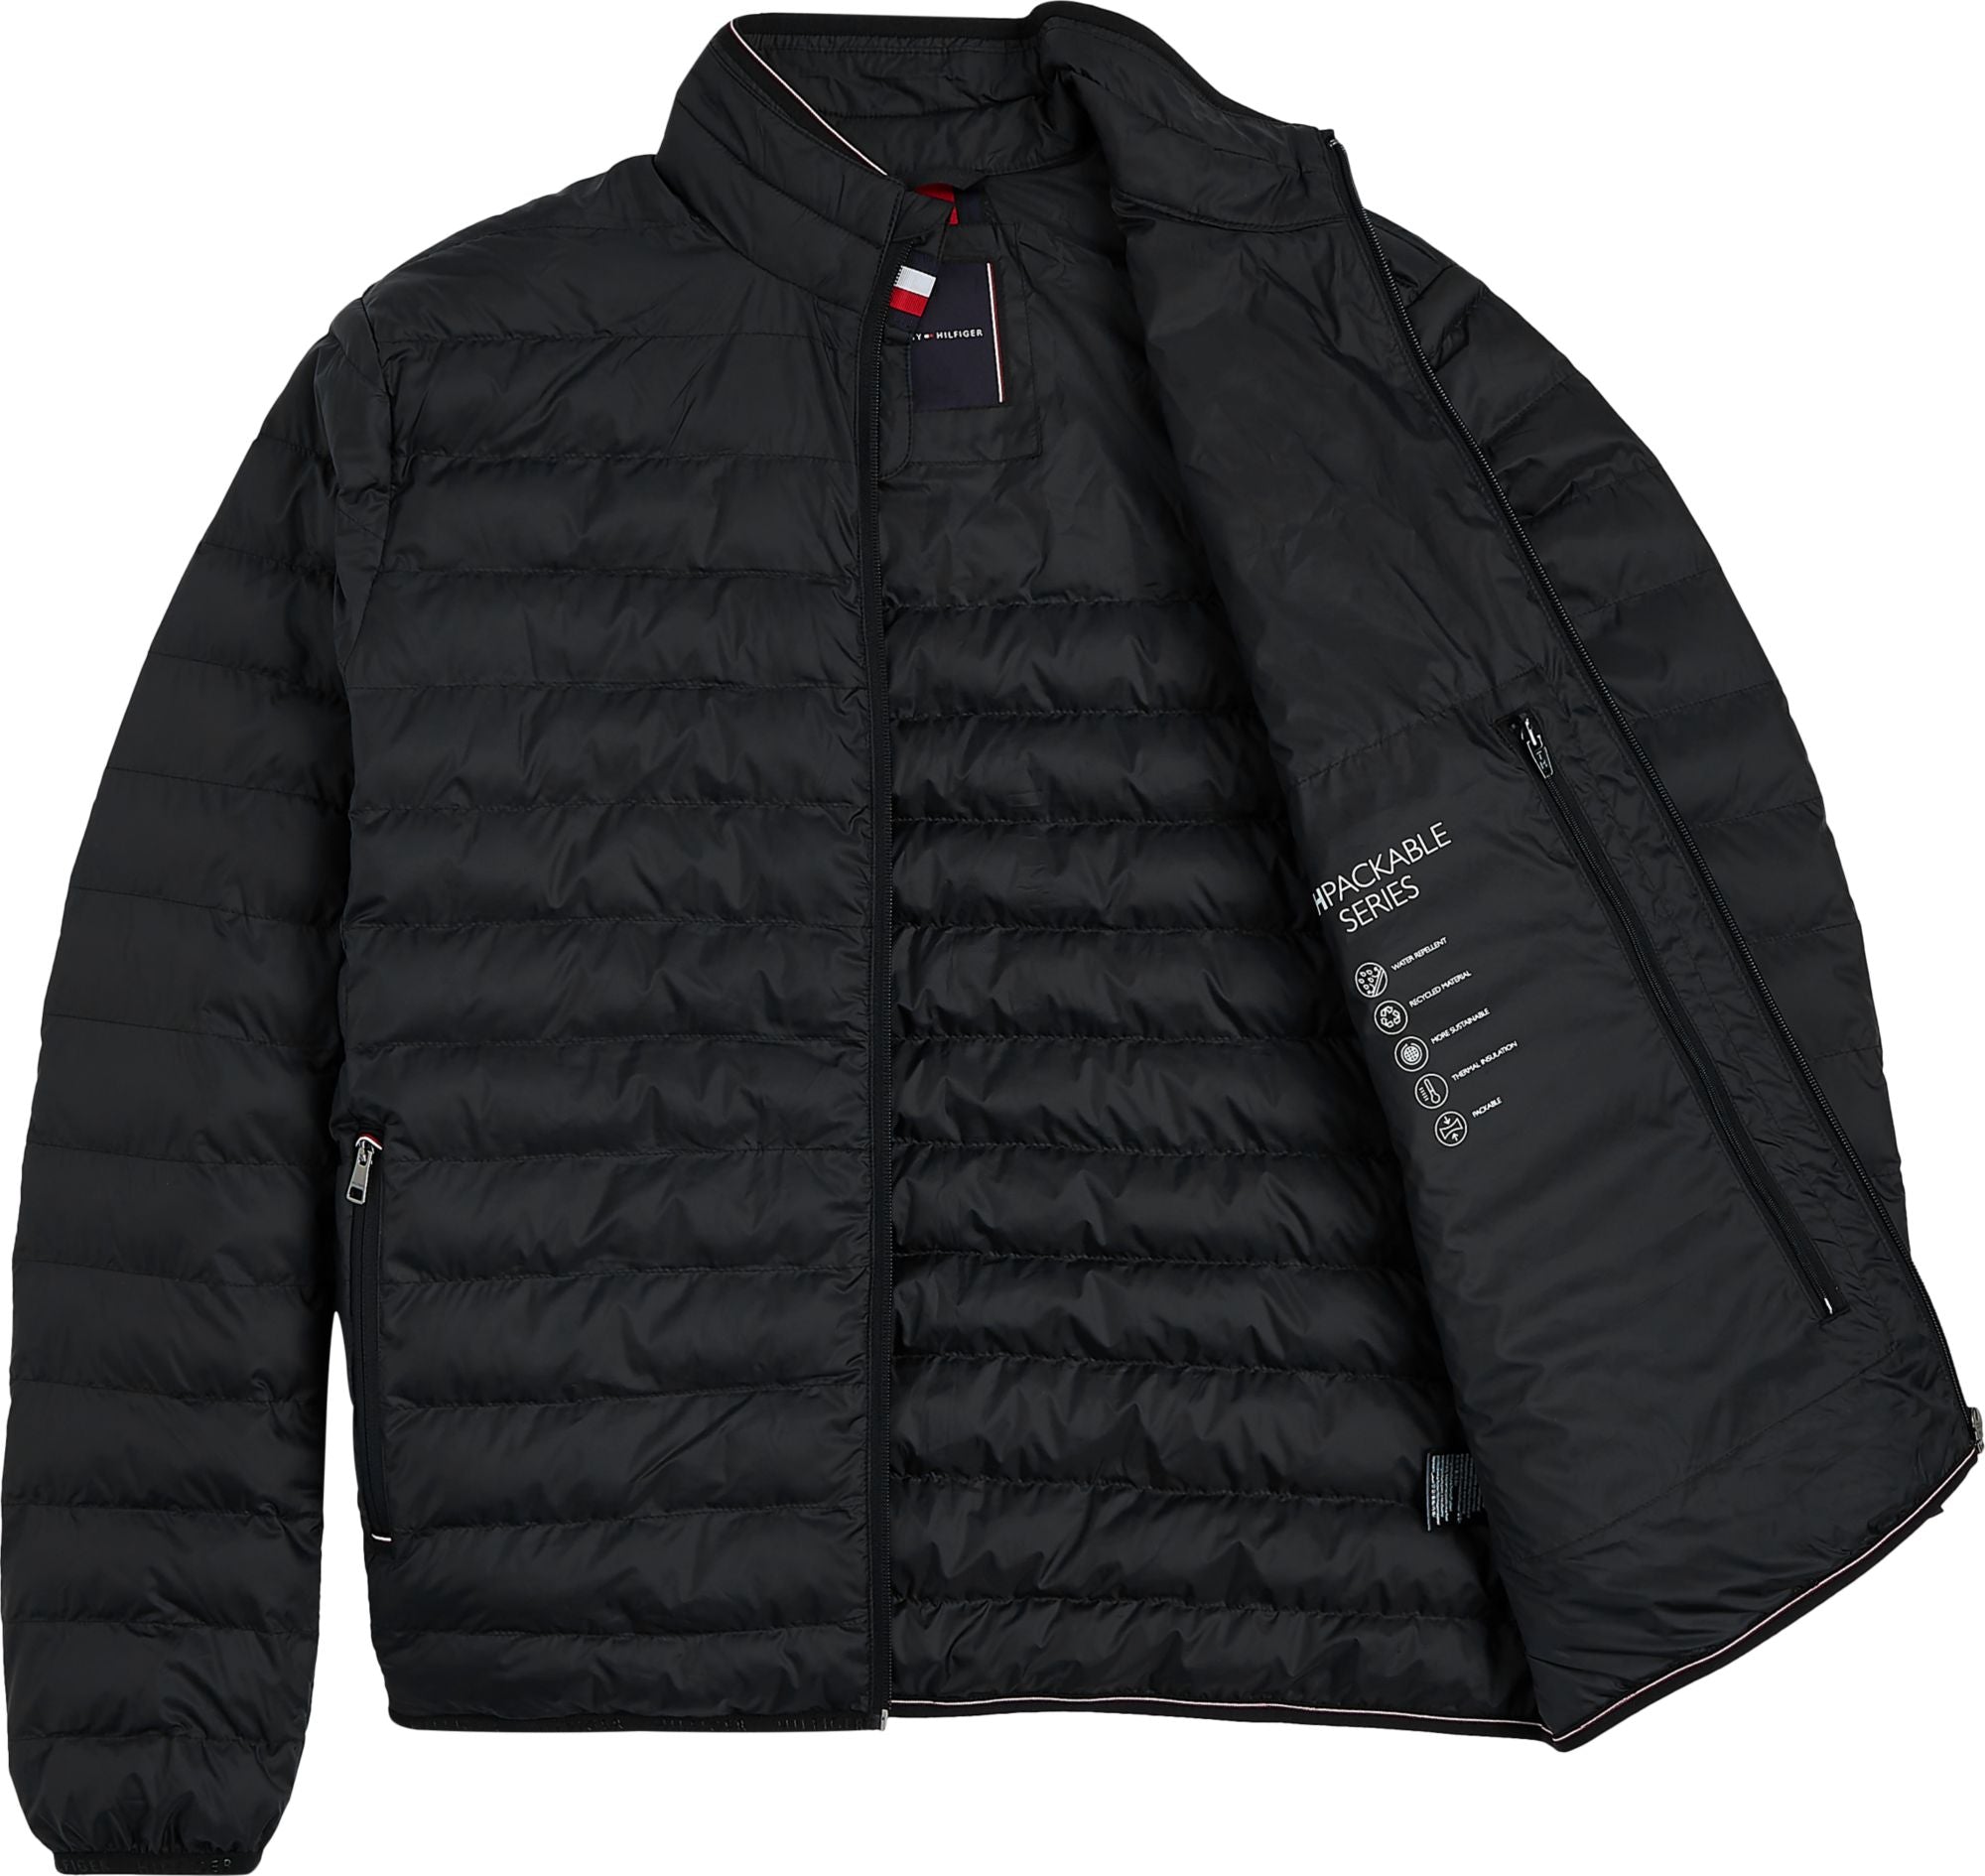 Warm Padded Jacket Black